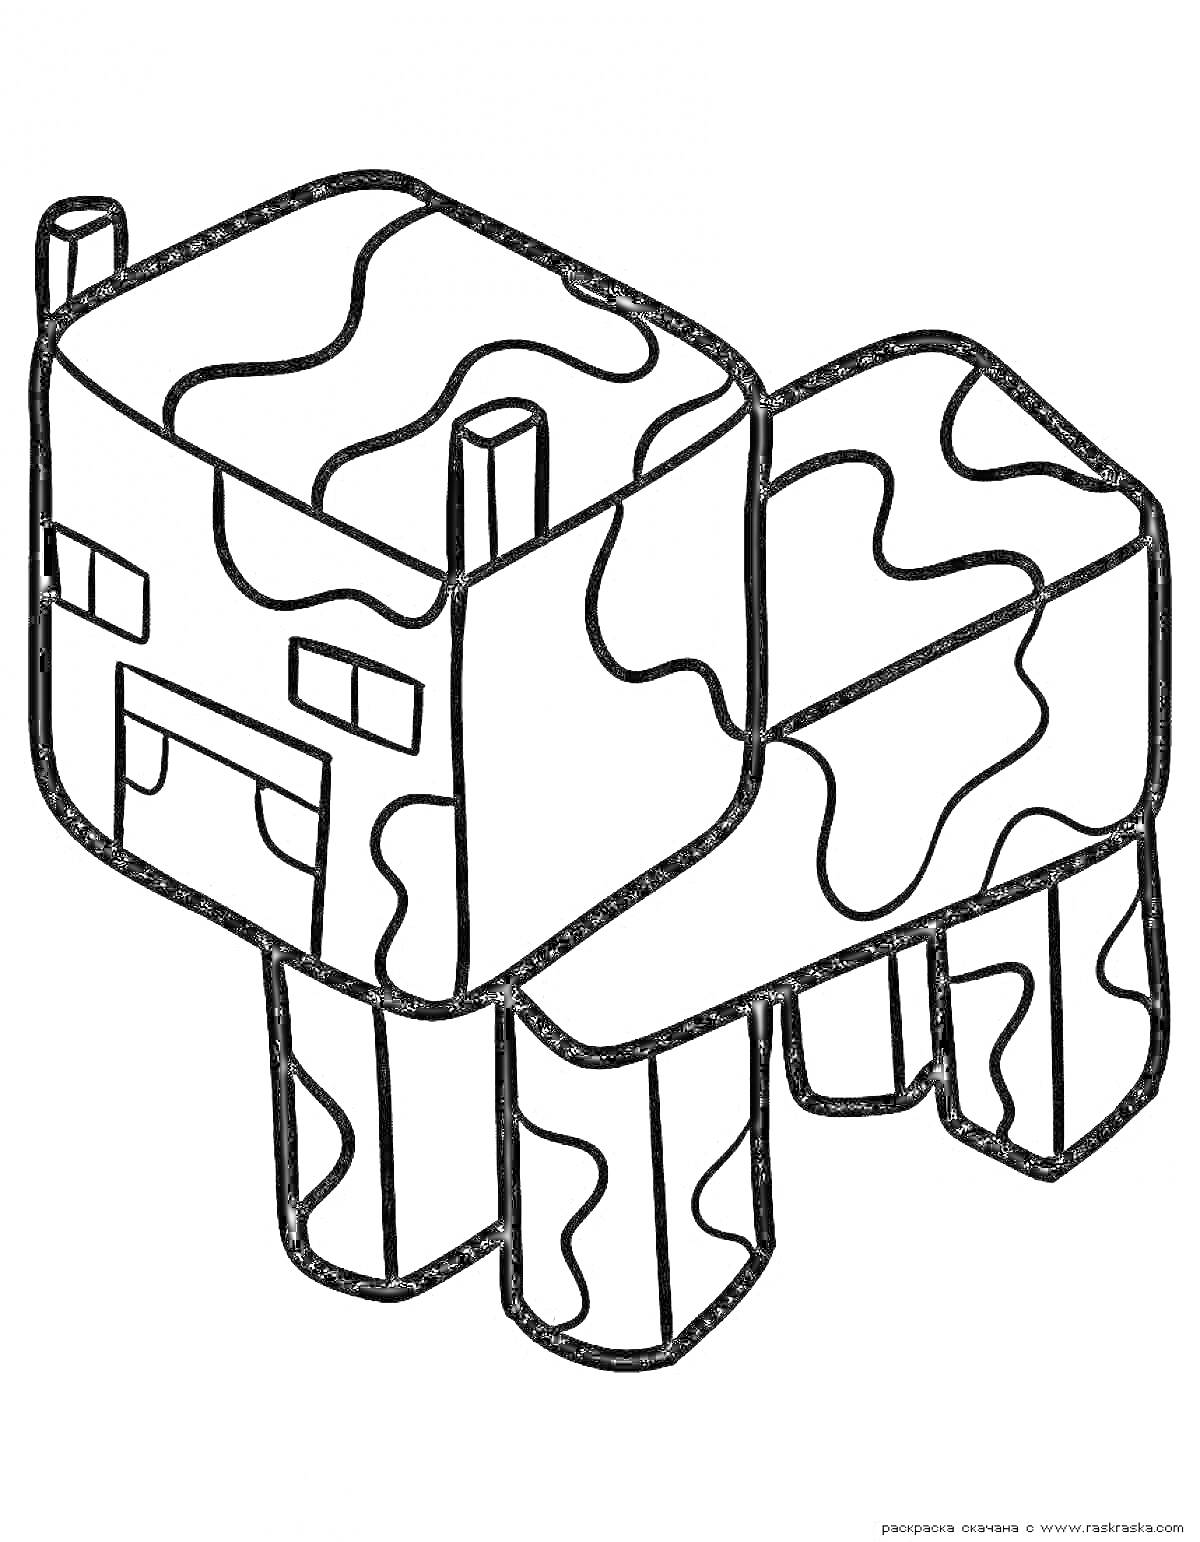 Раскраска Раскраска с Minecraft коровой, в стиле кубических форм, с пятнами и квадратной головой, четвероногая